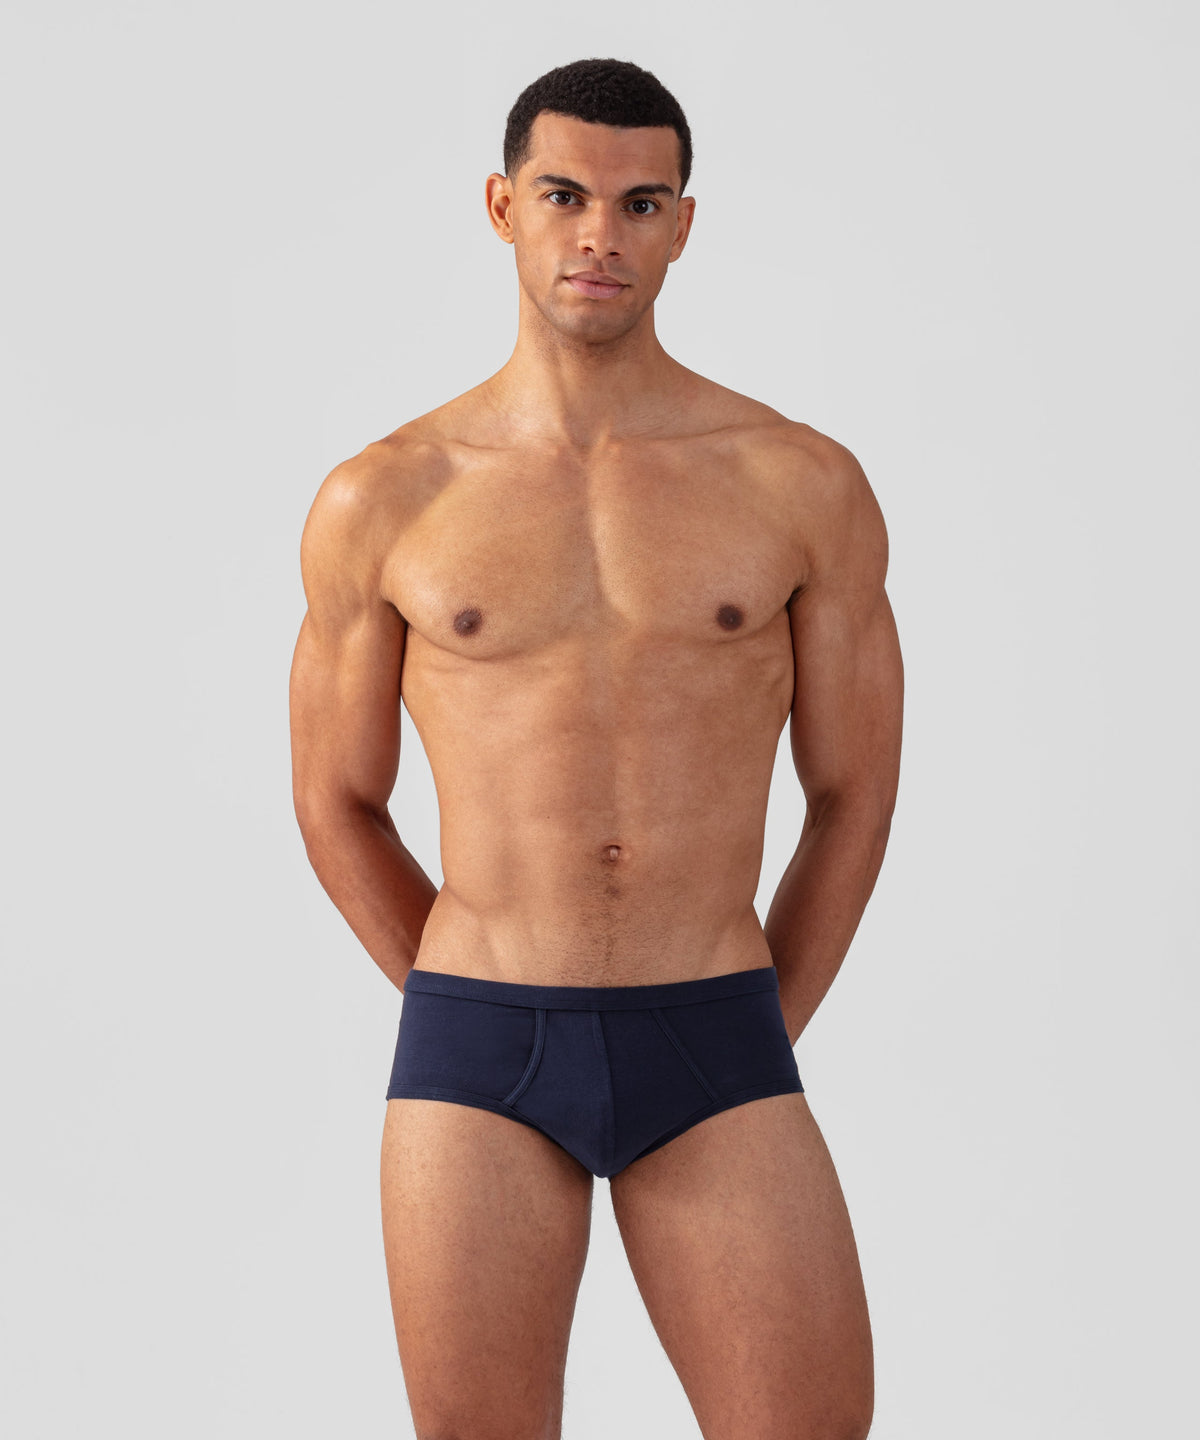 Shop Men's Premium Underwear Online